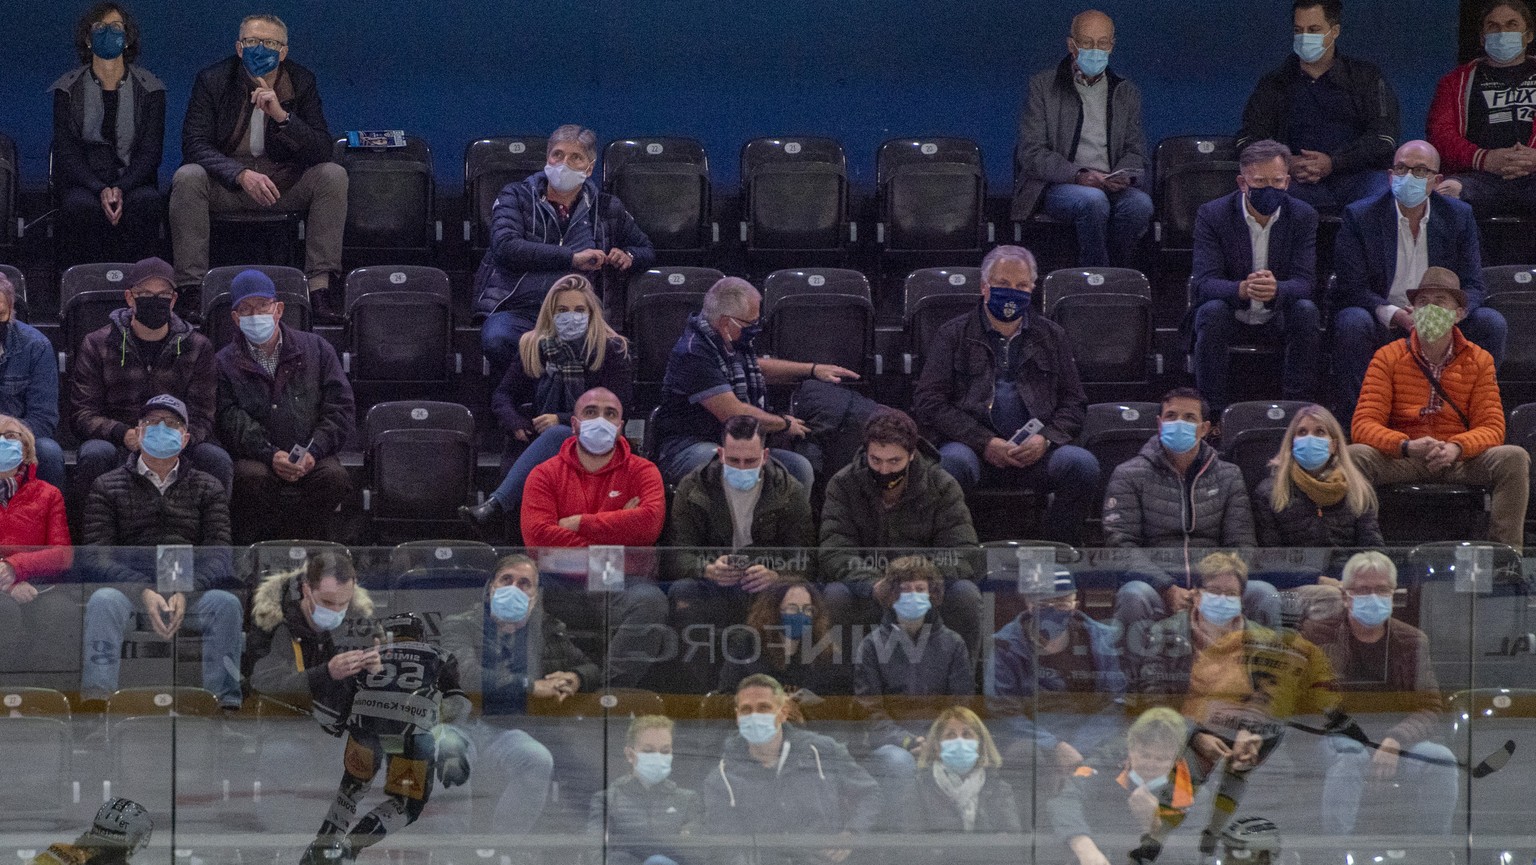 Die Zuger fans geniessen das Spiel mit Schutzmasken beim Eishockey Meisterschaftsspiel in der Qualifikation der National League zwischen dem EV Zug und dem SC Bern vom Samstag, 10. Oktober 2020 in Zug ...